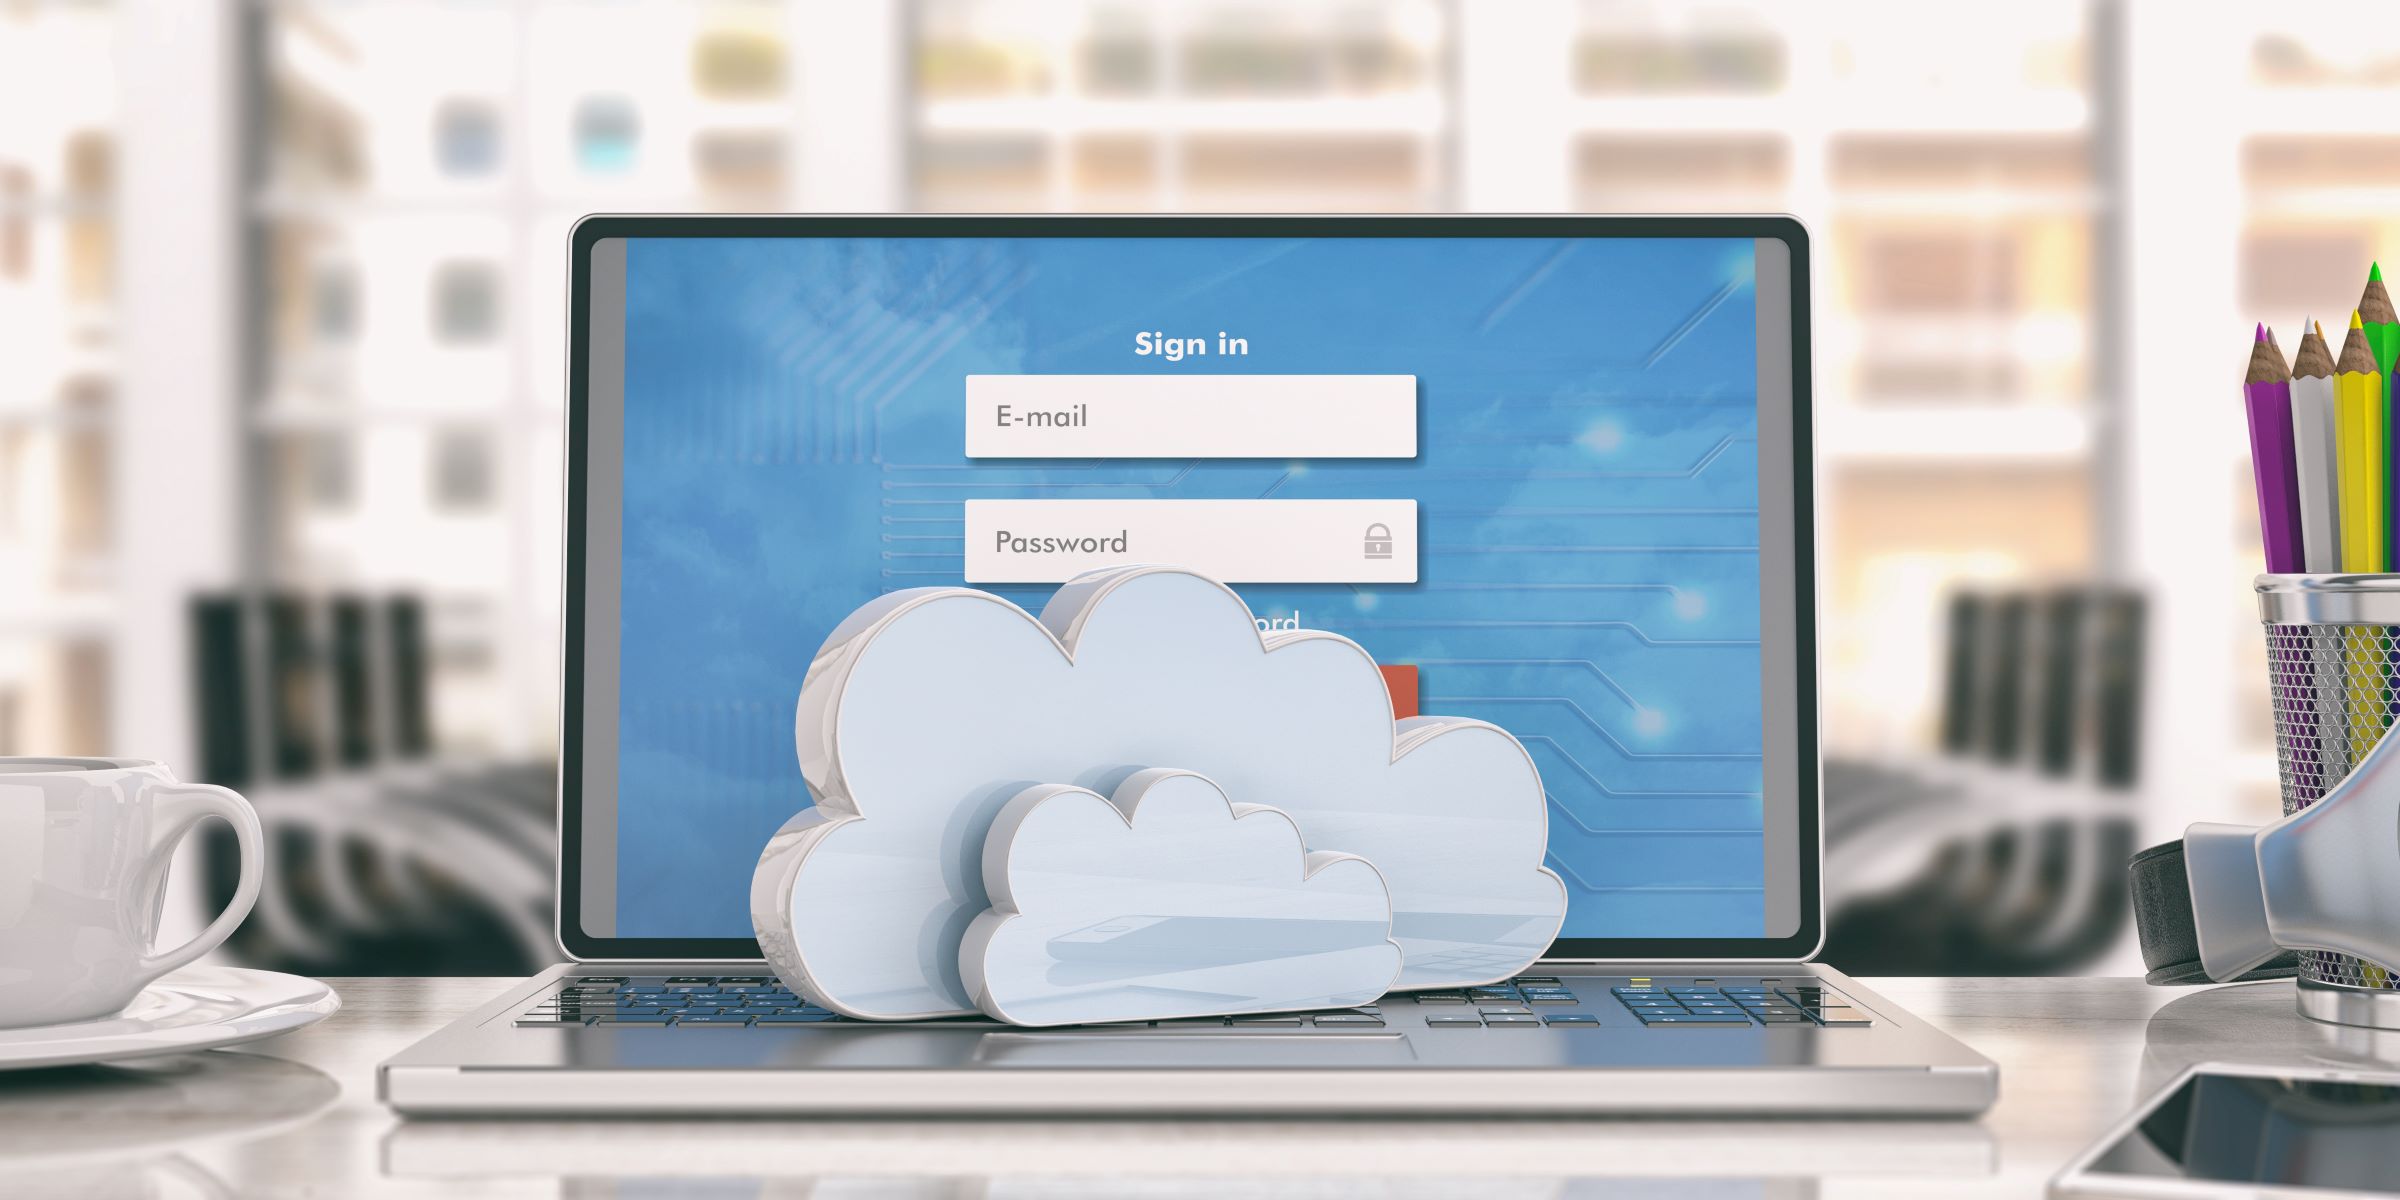 Cloud Desktop là gì? Những lưu ý khi sử dụng cho người mới